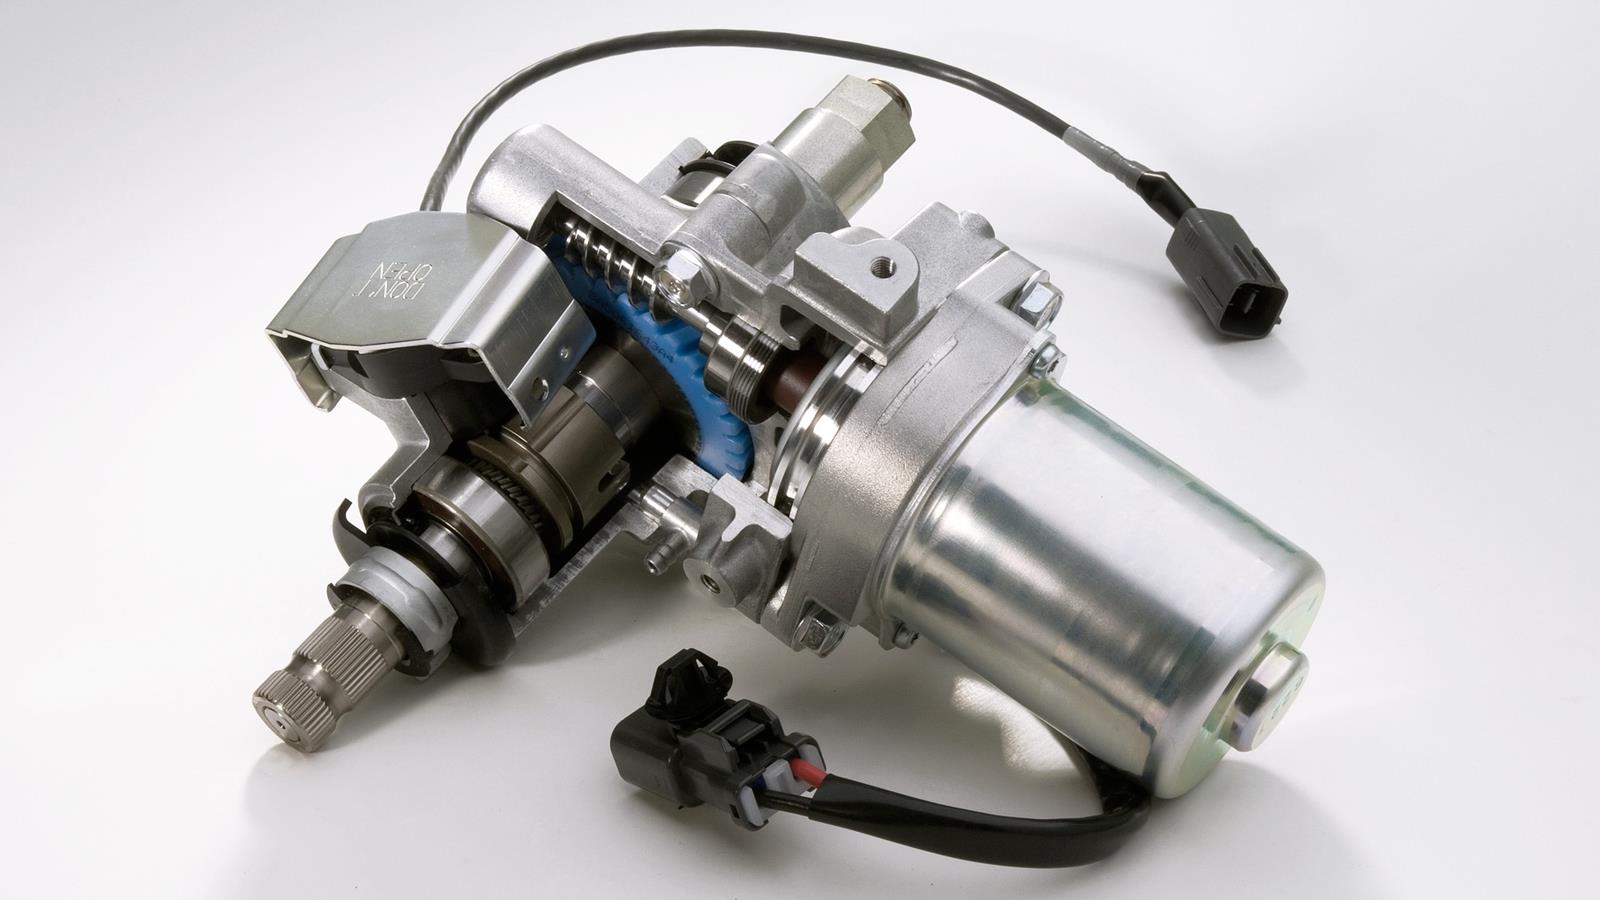 708 köbcentis DOHC motor A kemény munkavégzésre alkalmas Kodiak 700 nagy teljesítményű, nagy kapacitású motorral rendelkezik, amely kategóriaelső nyomatékot és teljesítményt kölcsönöz a járműnek.